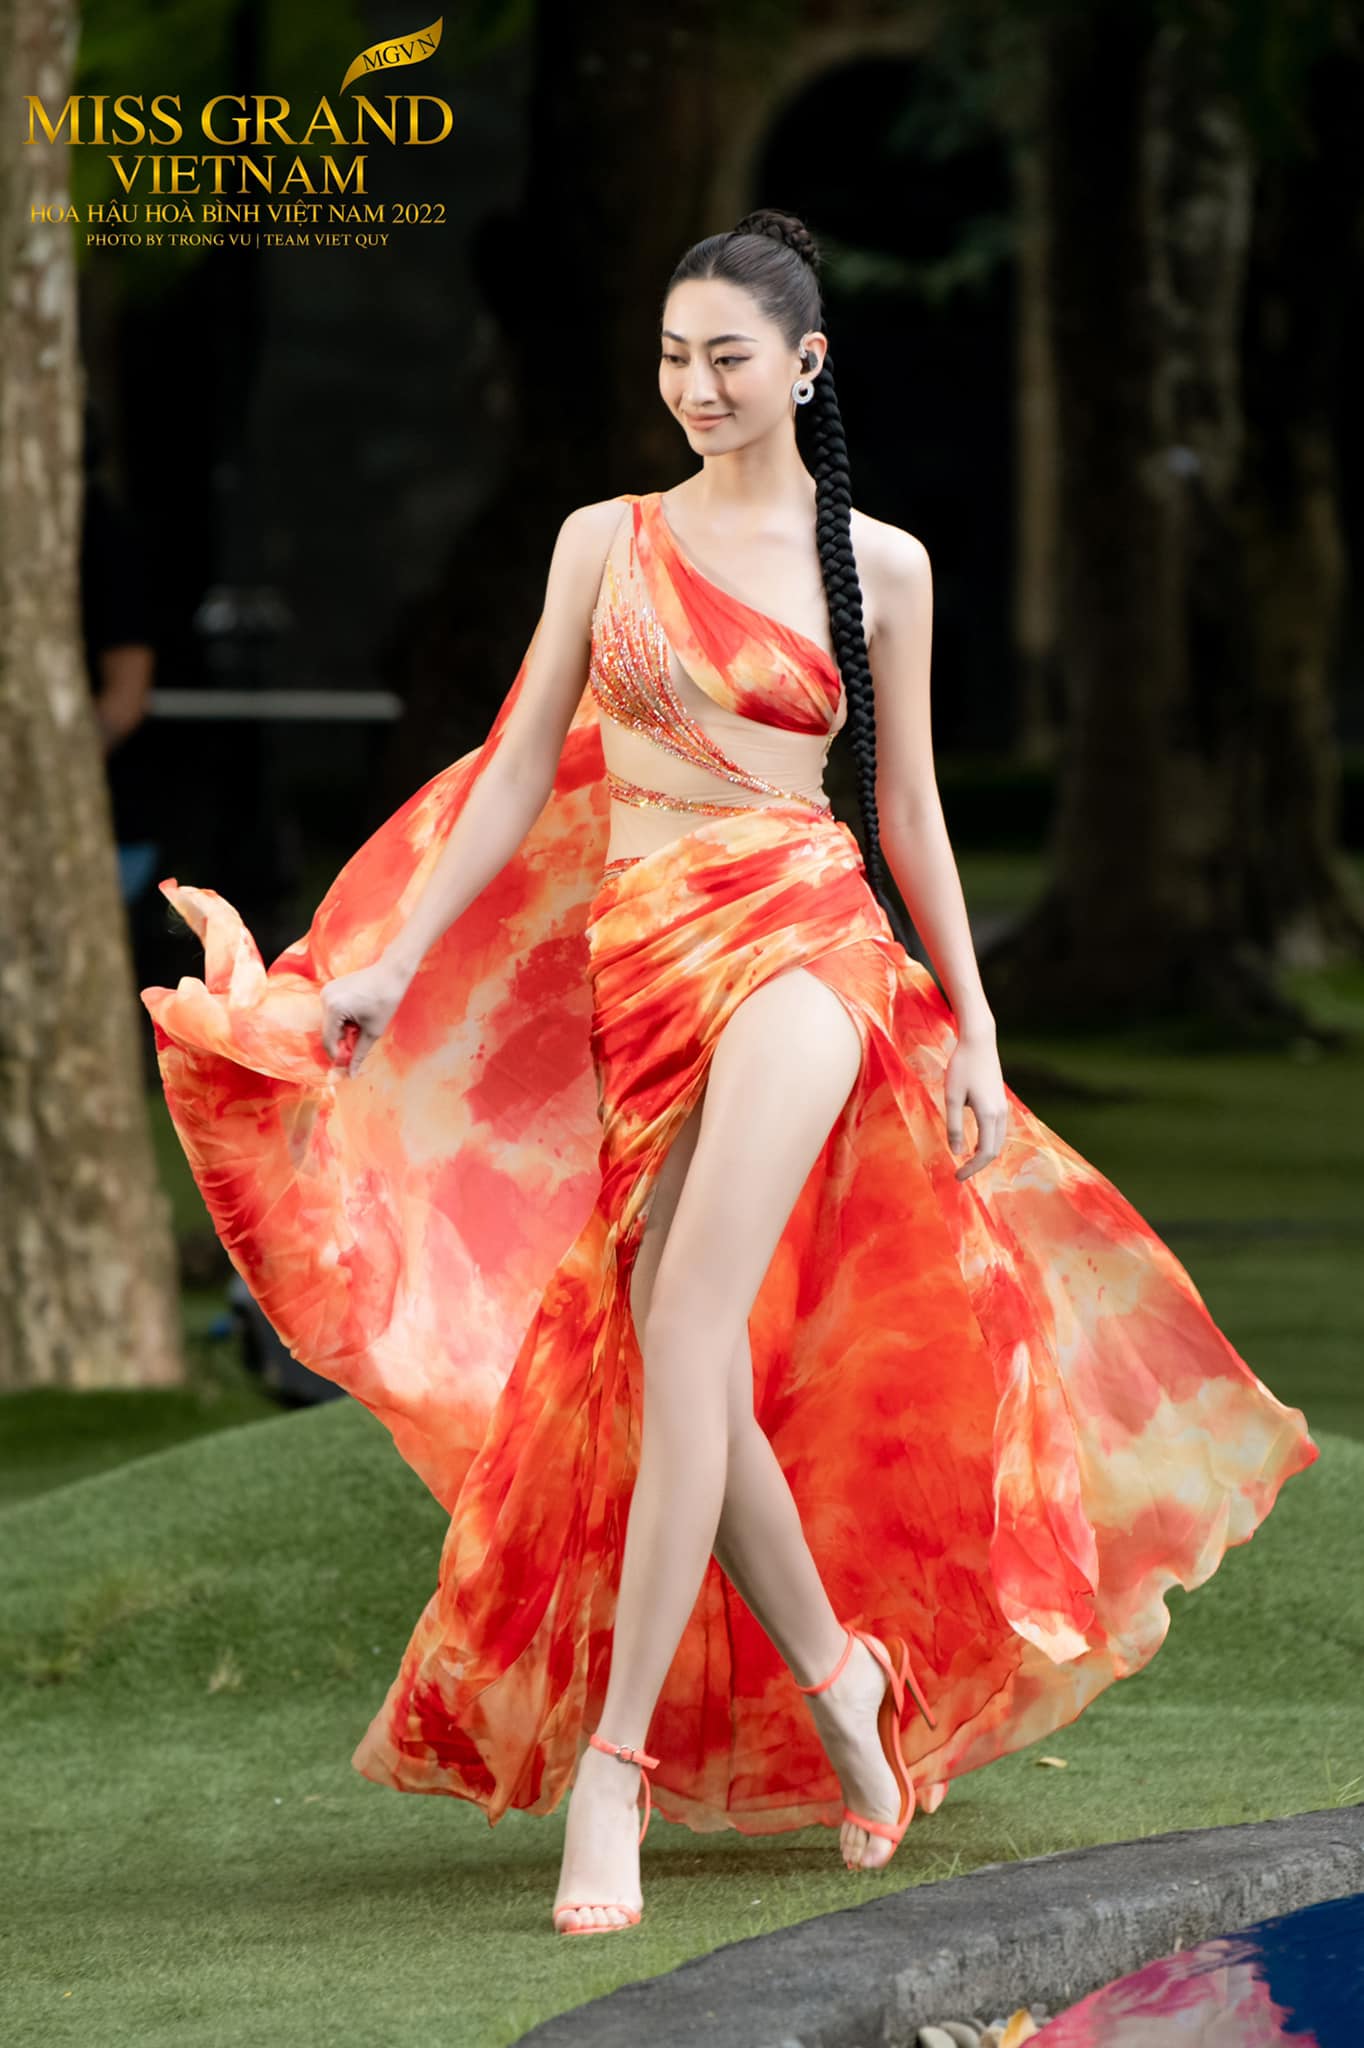 Hoa hậu Lương Thùy Linh cuốn hút với váy xẻ cao khoe chân 1m22 gợi ...